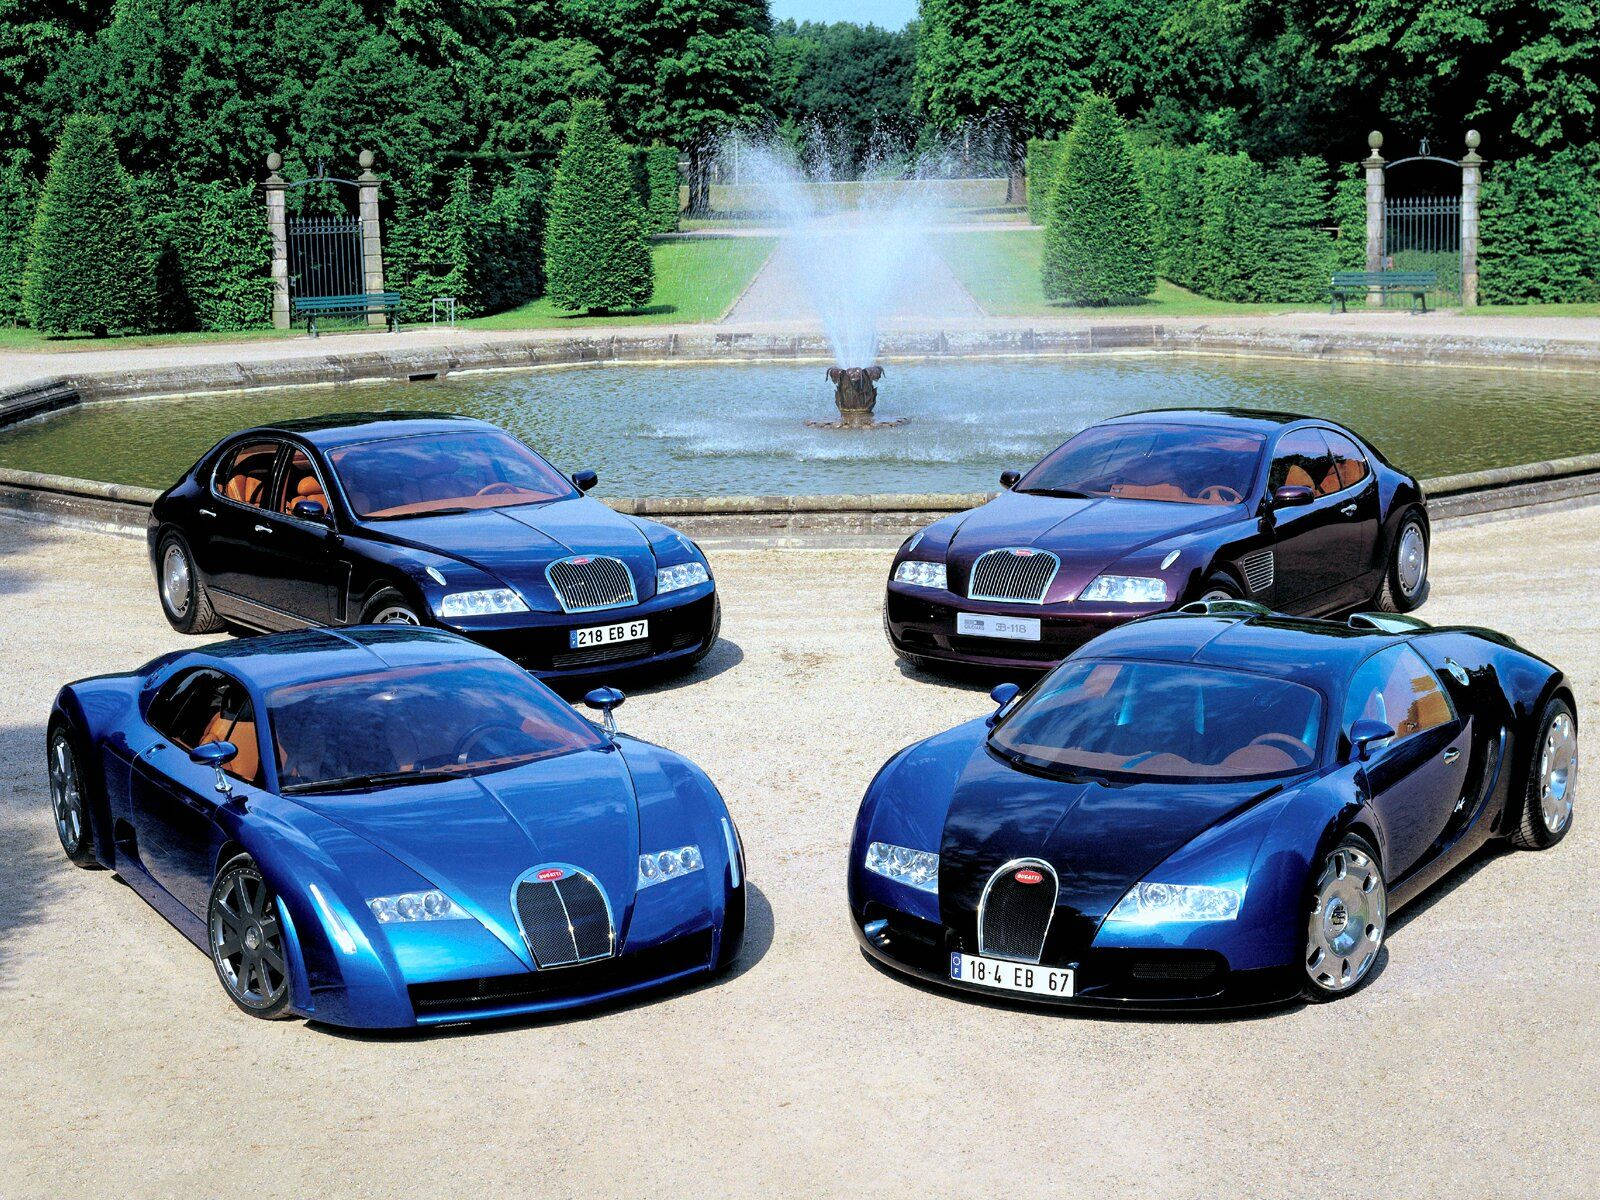 4 Bugattis Near A Fountain